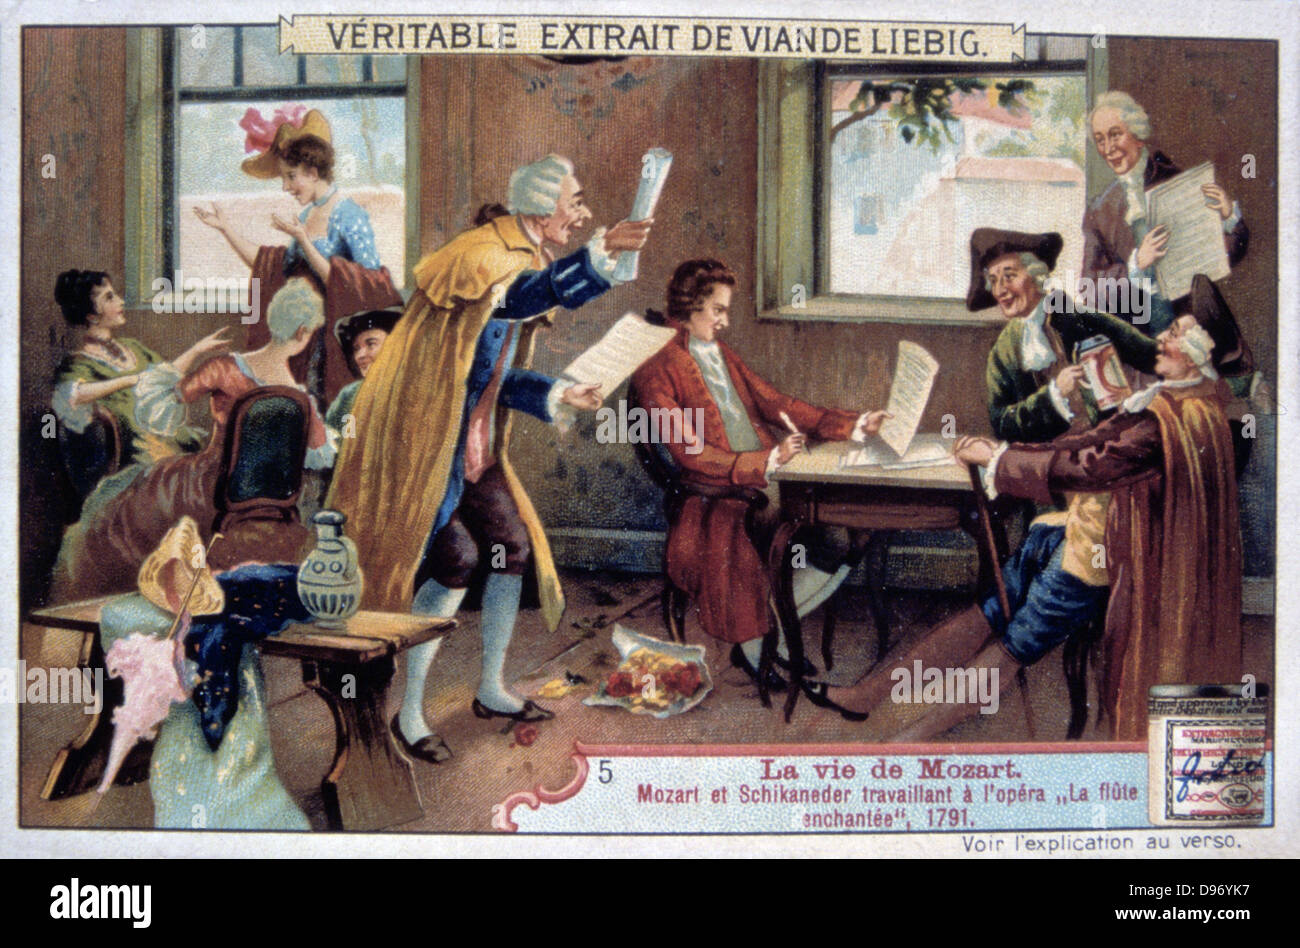 L'opéra de Mozart "La Flûte Enchantée" ('Die Zauberflote'), 1791 (1906). Wolfgang Amadeus Mozart (1756-1791) et Emanuel Schikaneder (1751-1812), le librettiste, travailler sur "La Flûte Enchantée" qui a été produit pour la première fois à Vienne en septembre 1791. 'La Vie de Mozart' ('La vie de Mozart"), Liebig Trade Card. (Paris, 1906). Chromolithographie. Banque D'Images